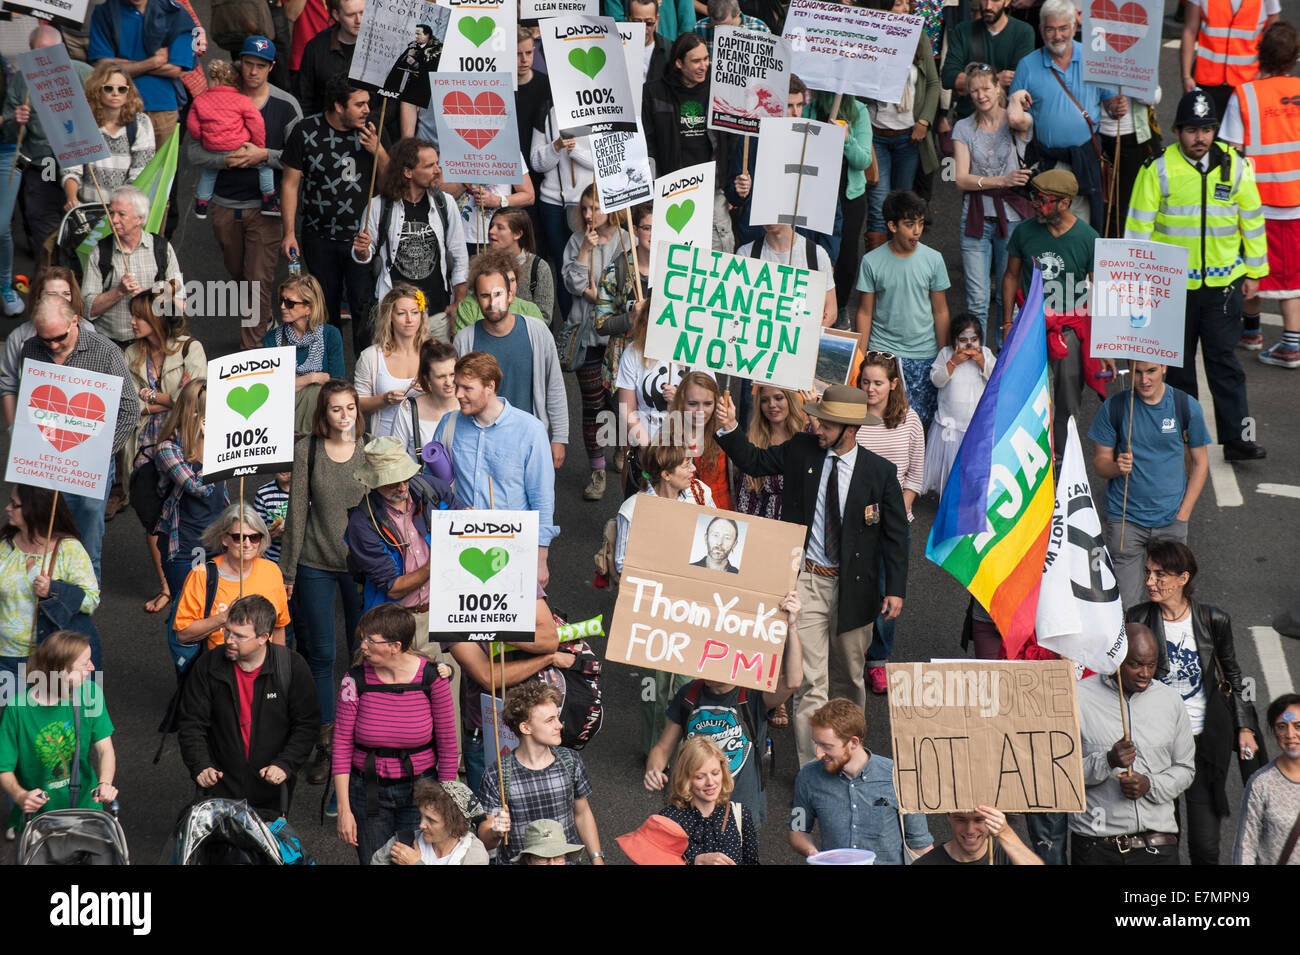 Londres, Reino Unido. 21 Sep, 2014. Manifestantes sostener pancartas aloft, algunos impresos y algunos hechos a mano, en la manifestación del cambio climático, Londres, 21 de septiembre de 2014. Crédito: Sue Cunningham Photographic/Alamy Live News Foto de stock